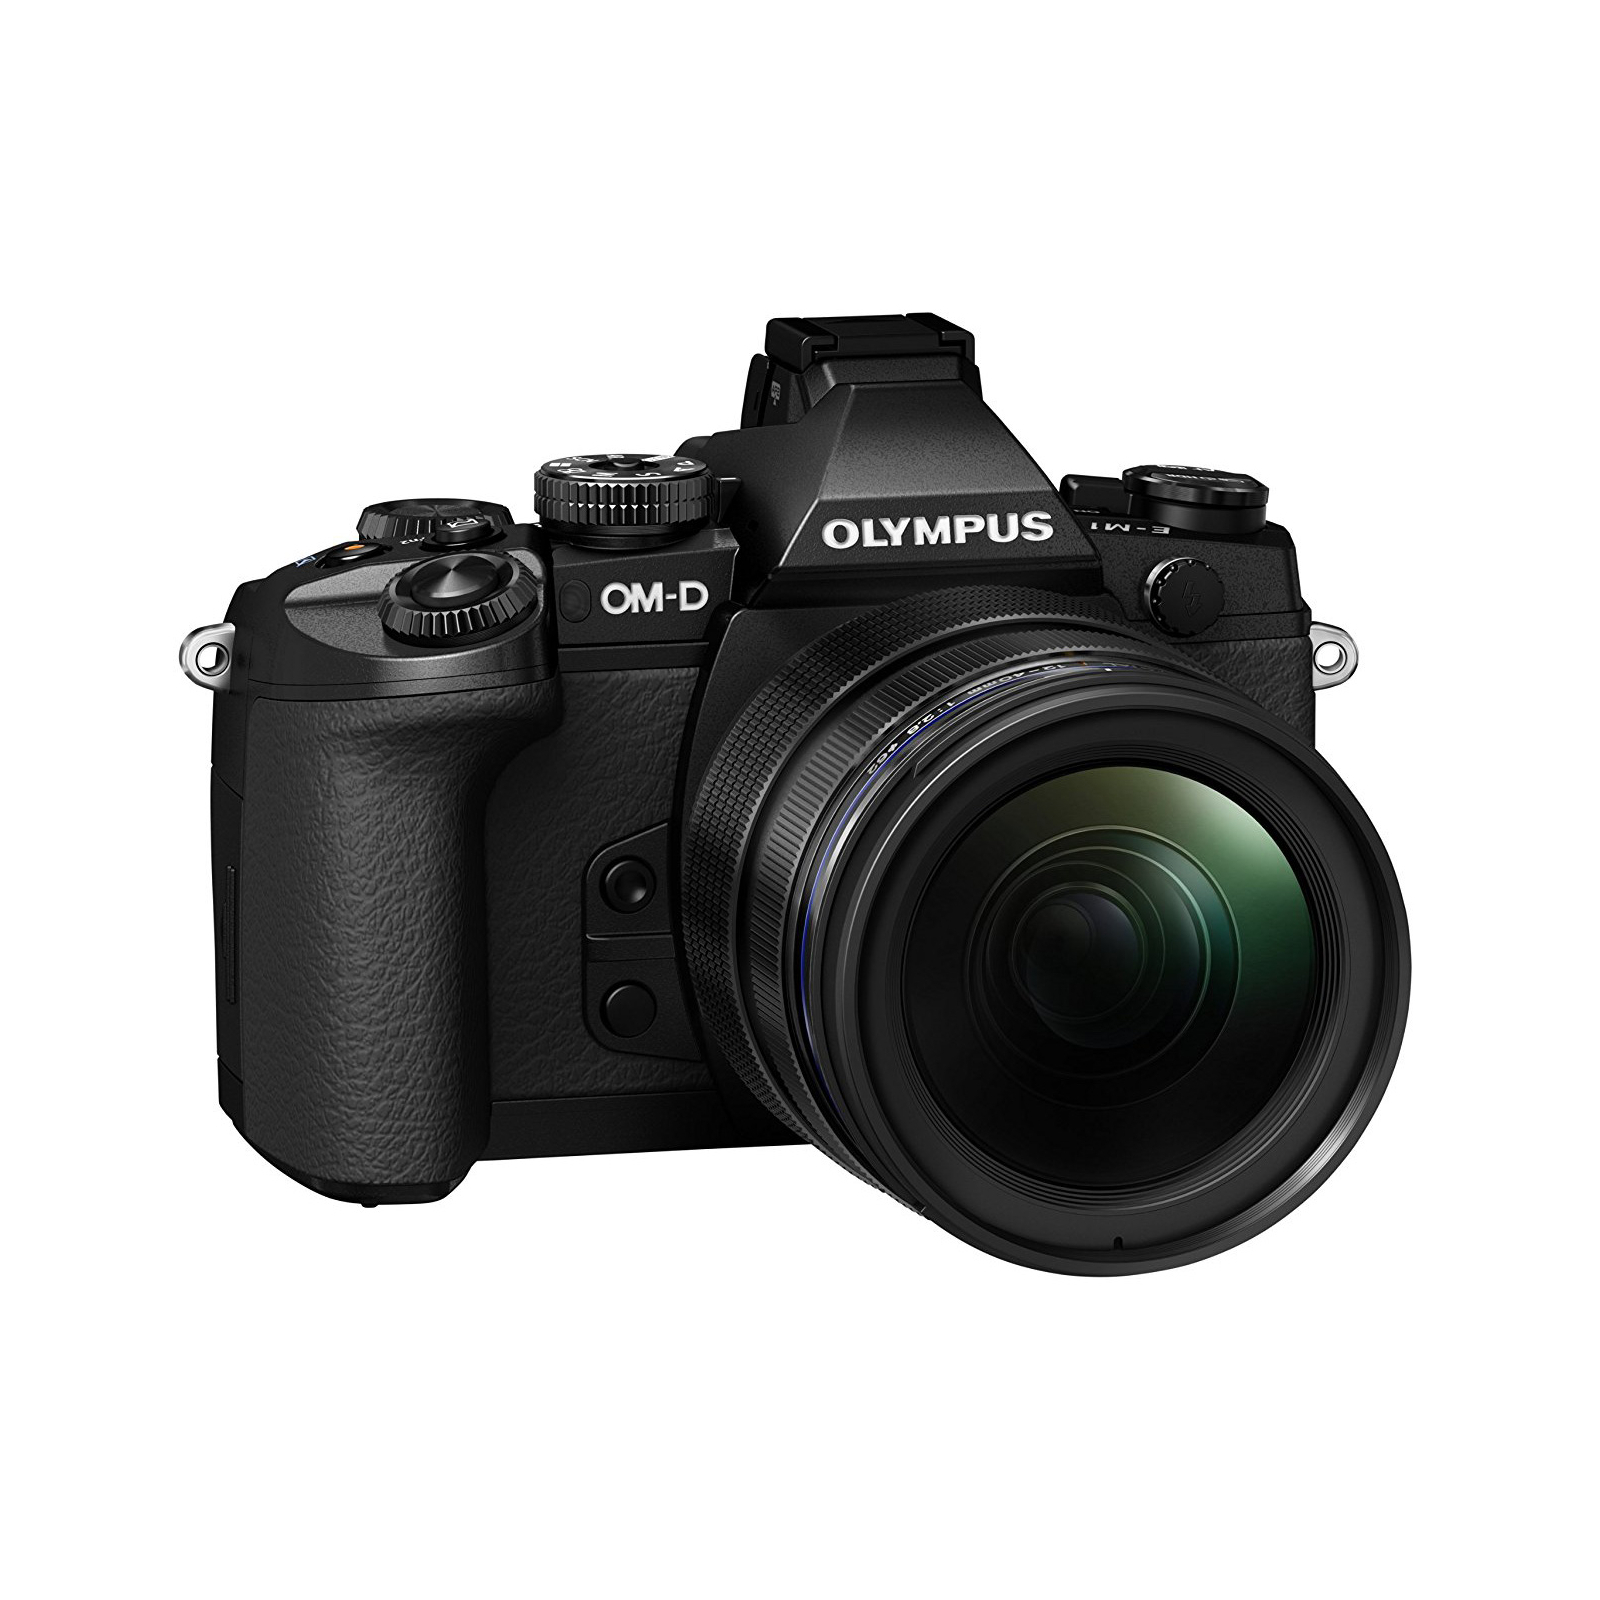 Цифровой фотоаппарат Olympus E-M1 mark II 12-40 Kit black/black (V207061BE000) изображение 3